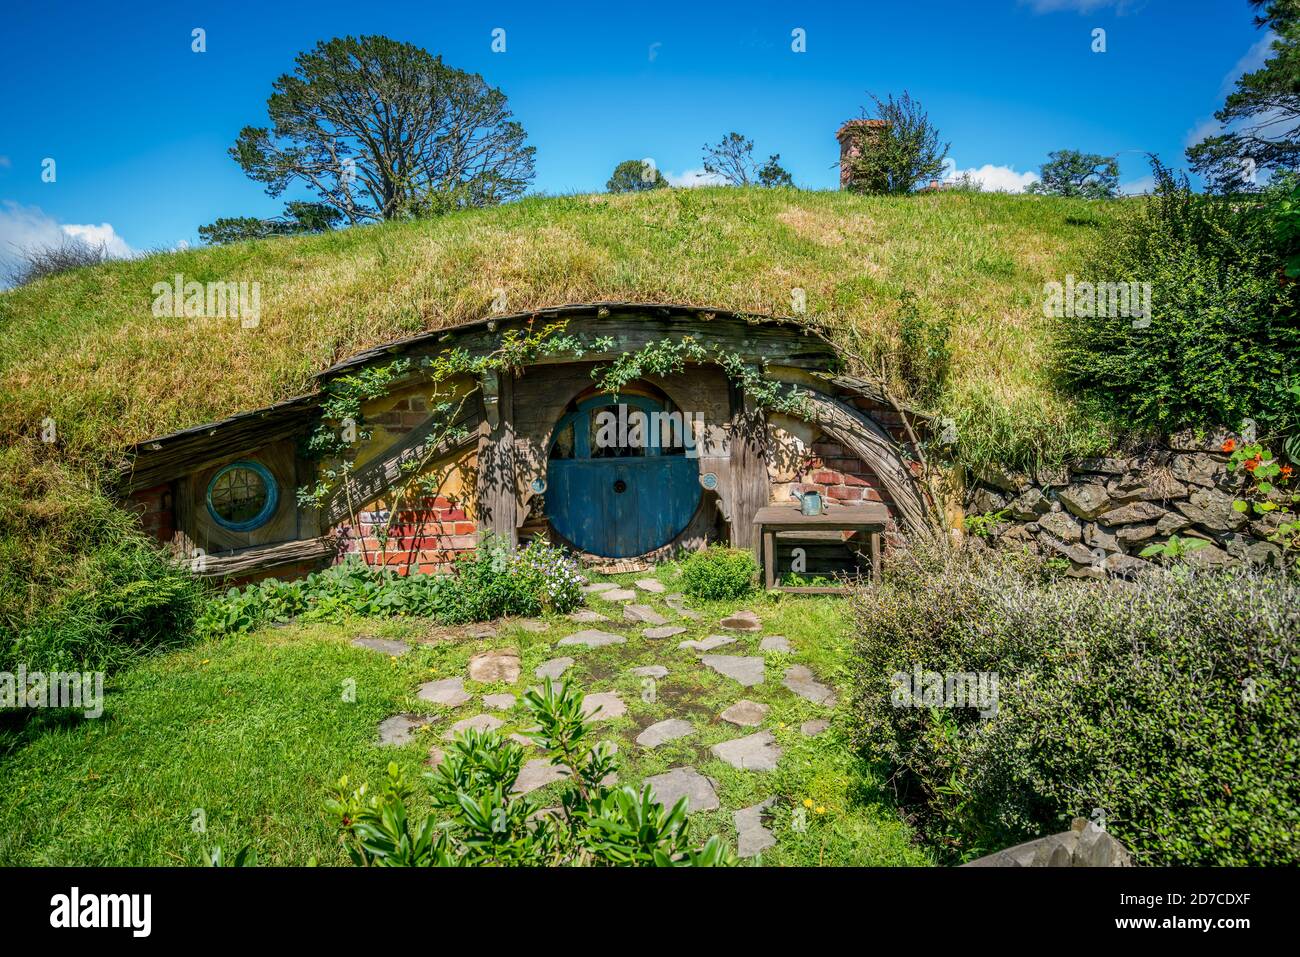 Matamata, Nouvelle-Zélande - 11 décembre 2016 : ensemble de films Hobbiton créé pour filmer le Seigneur des anneaux et les films Hobbit dans l'Île du Nord de la Nouvelle-Zélande Banque D'Images